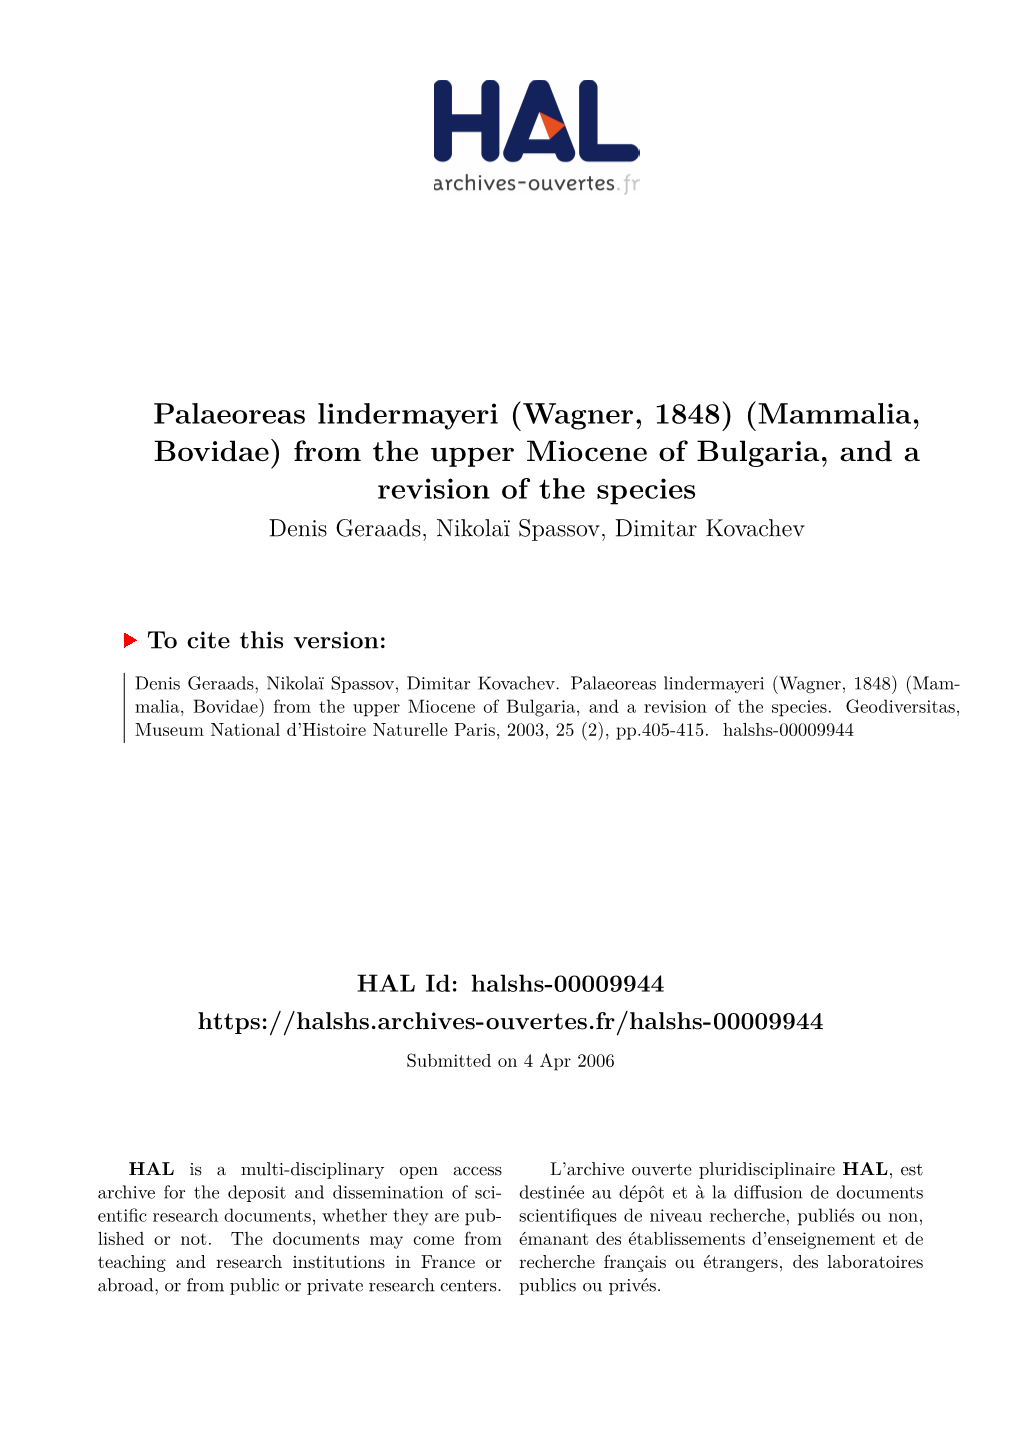 Mammalia, Bovidae) from the Upper Miocene of Bulgaria, and a Revision of the Species Denis Geraads, Nikolaï Spassov, Dimitar Kovachev